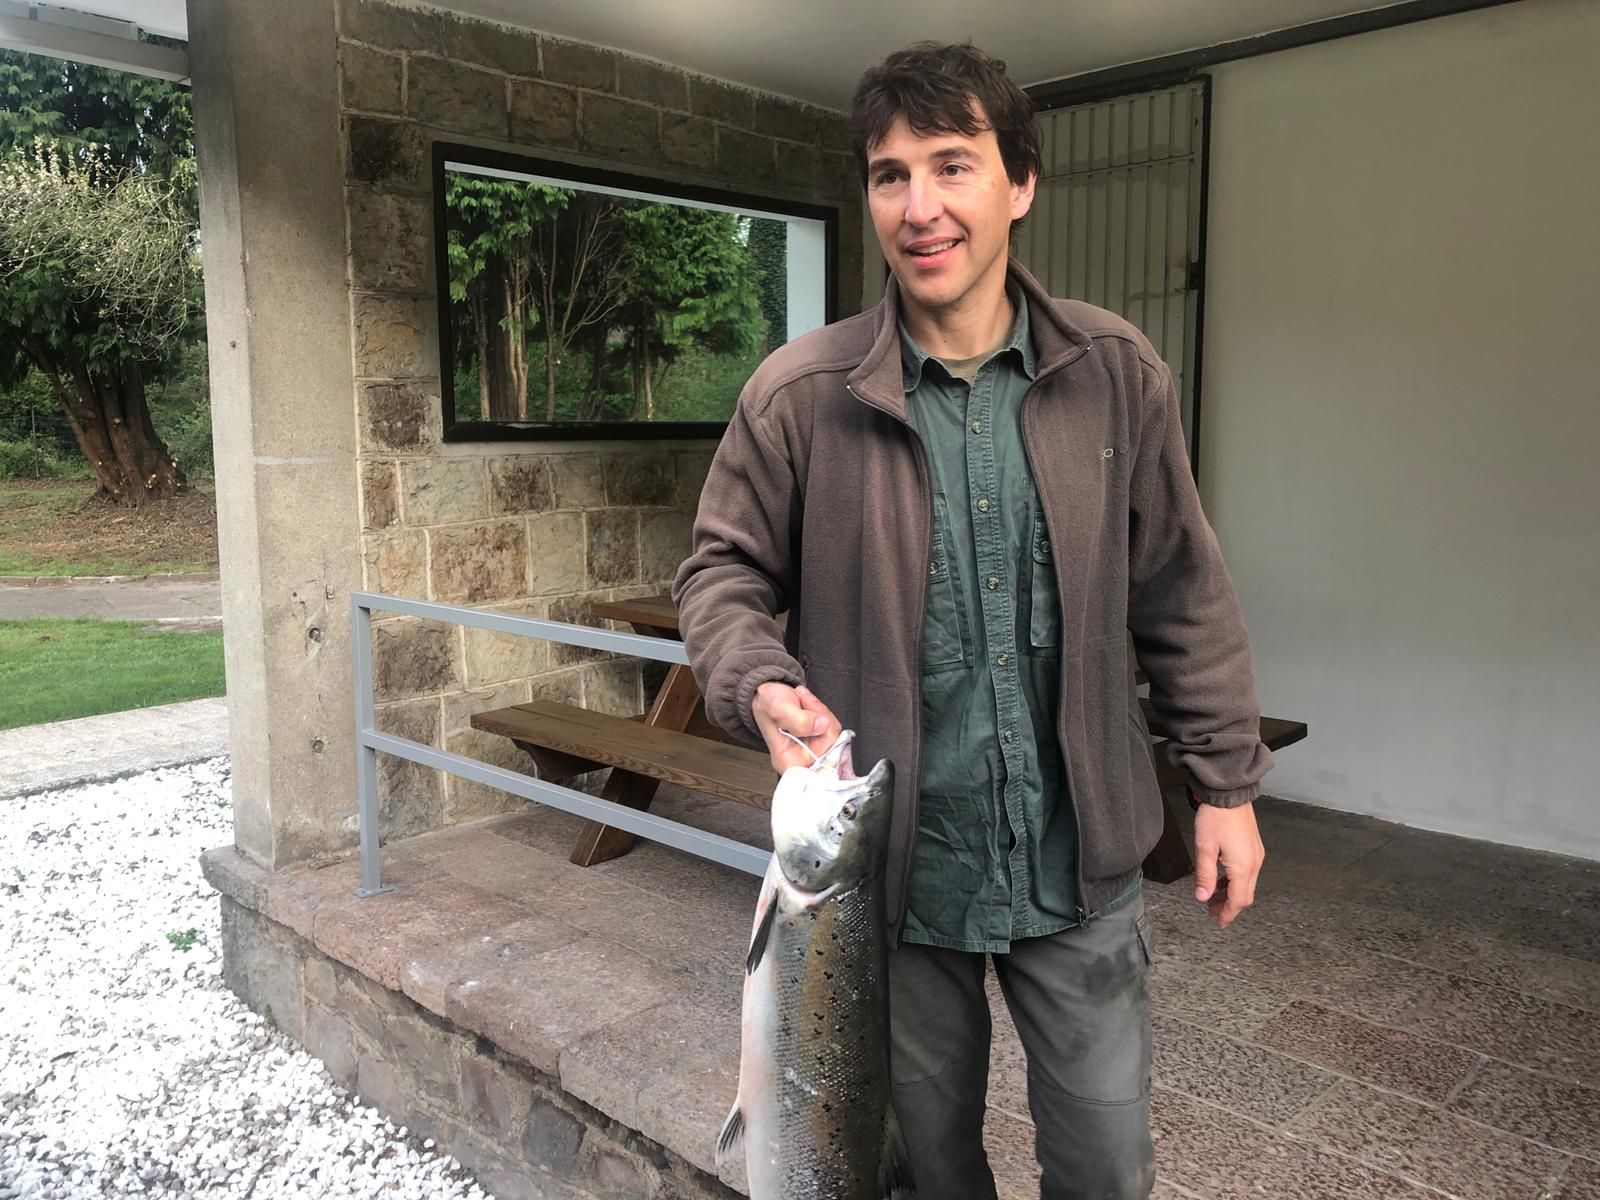 Sale en Campanu 2022: el primer salmón de la temporada se pesca en el Narcea y pesa 6,7 kilos